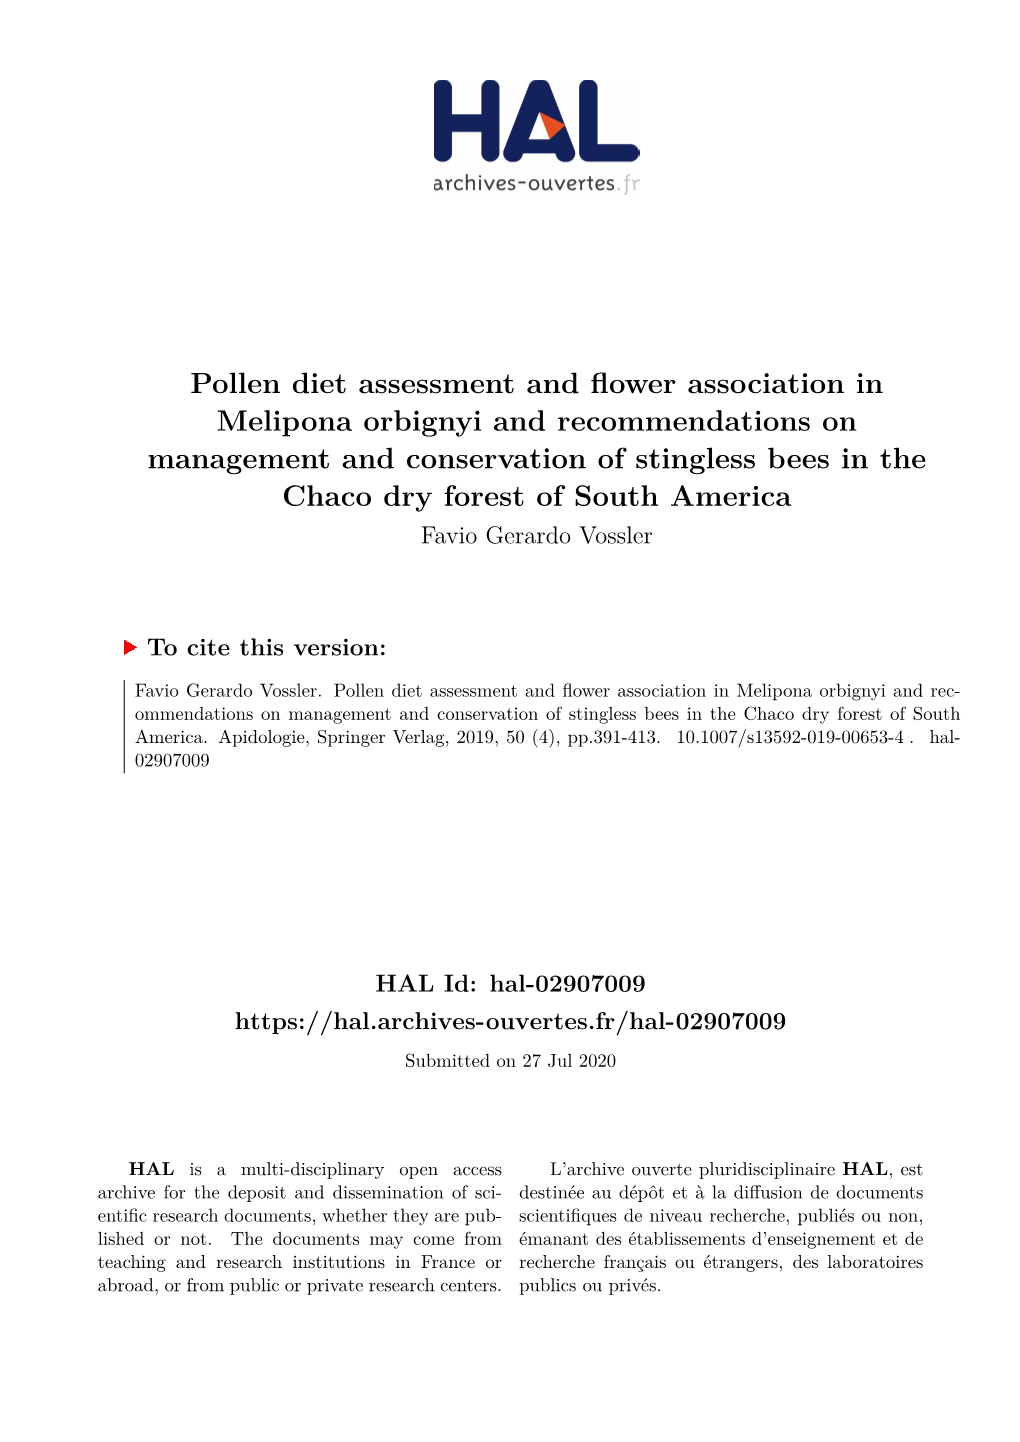 Pollen Diet Assessment and Flower Association